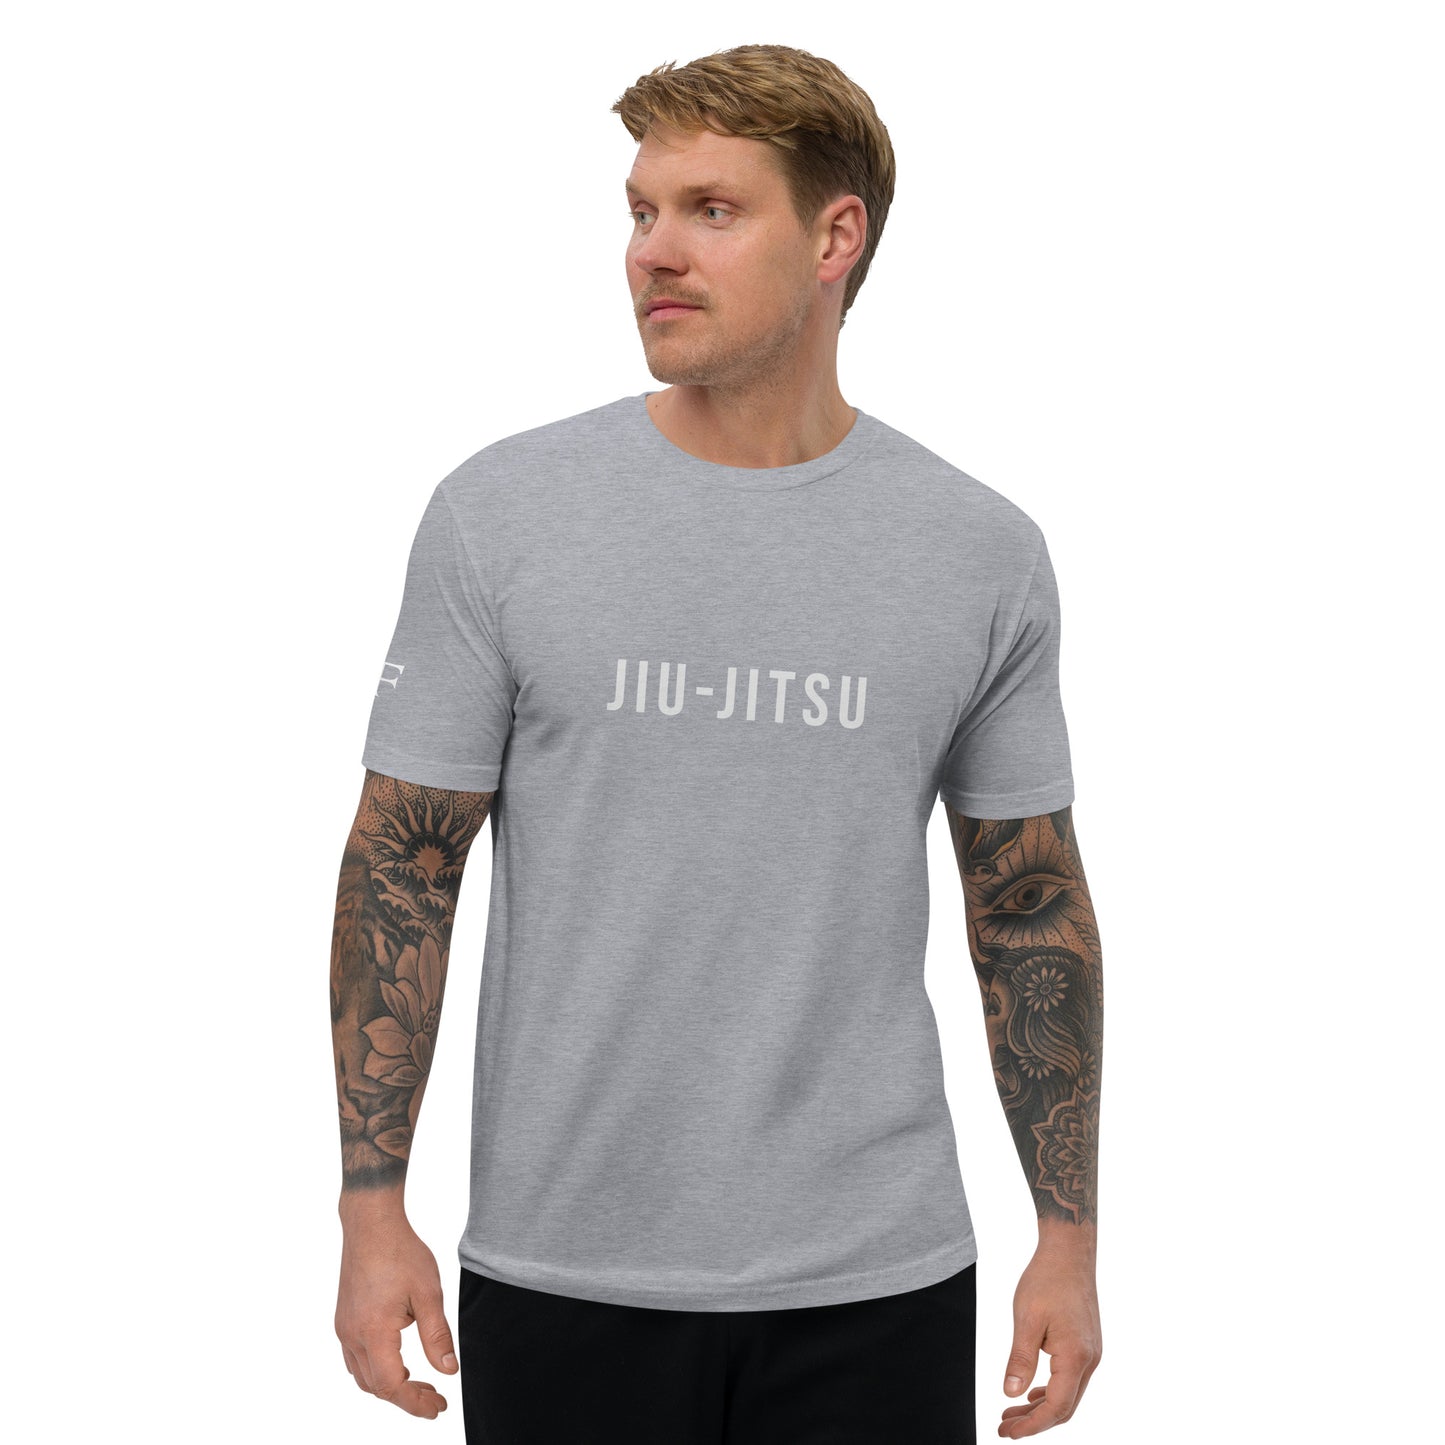 Jiu-Jitsu Men's Fitted Muscle T-Shirt